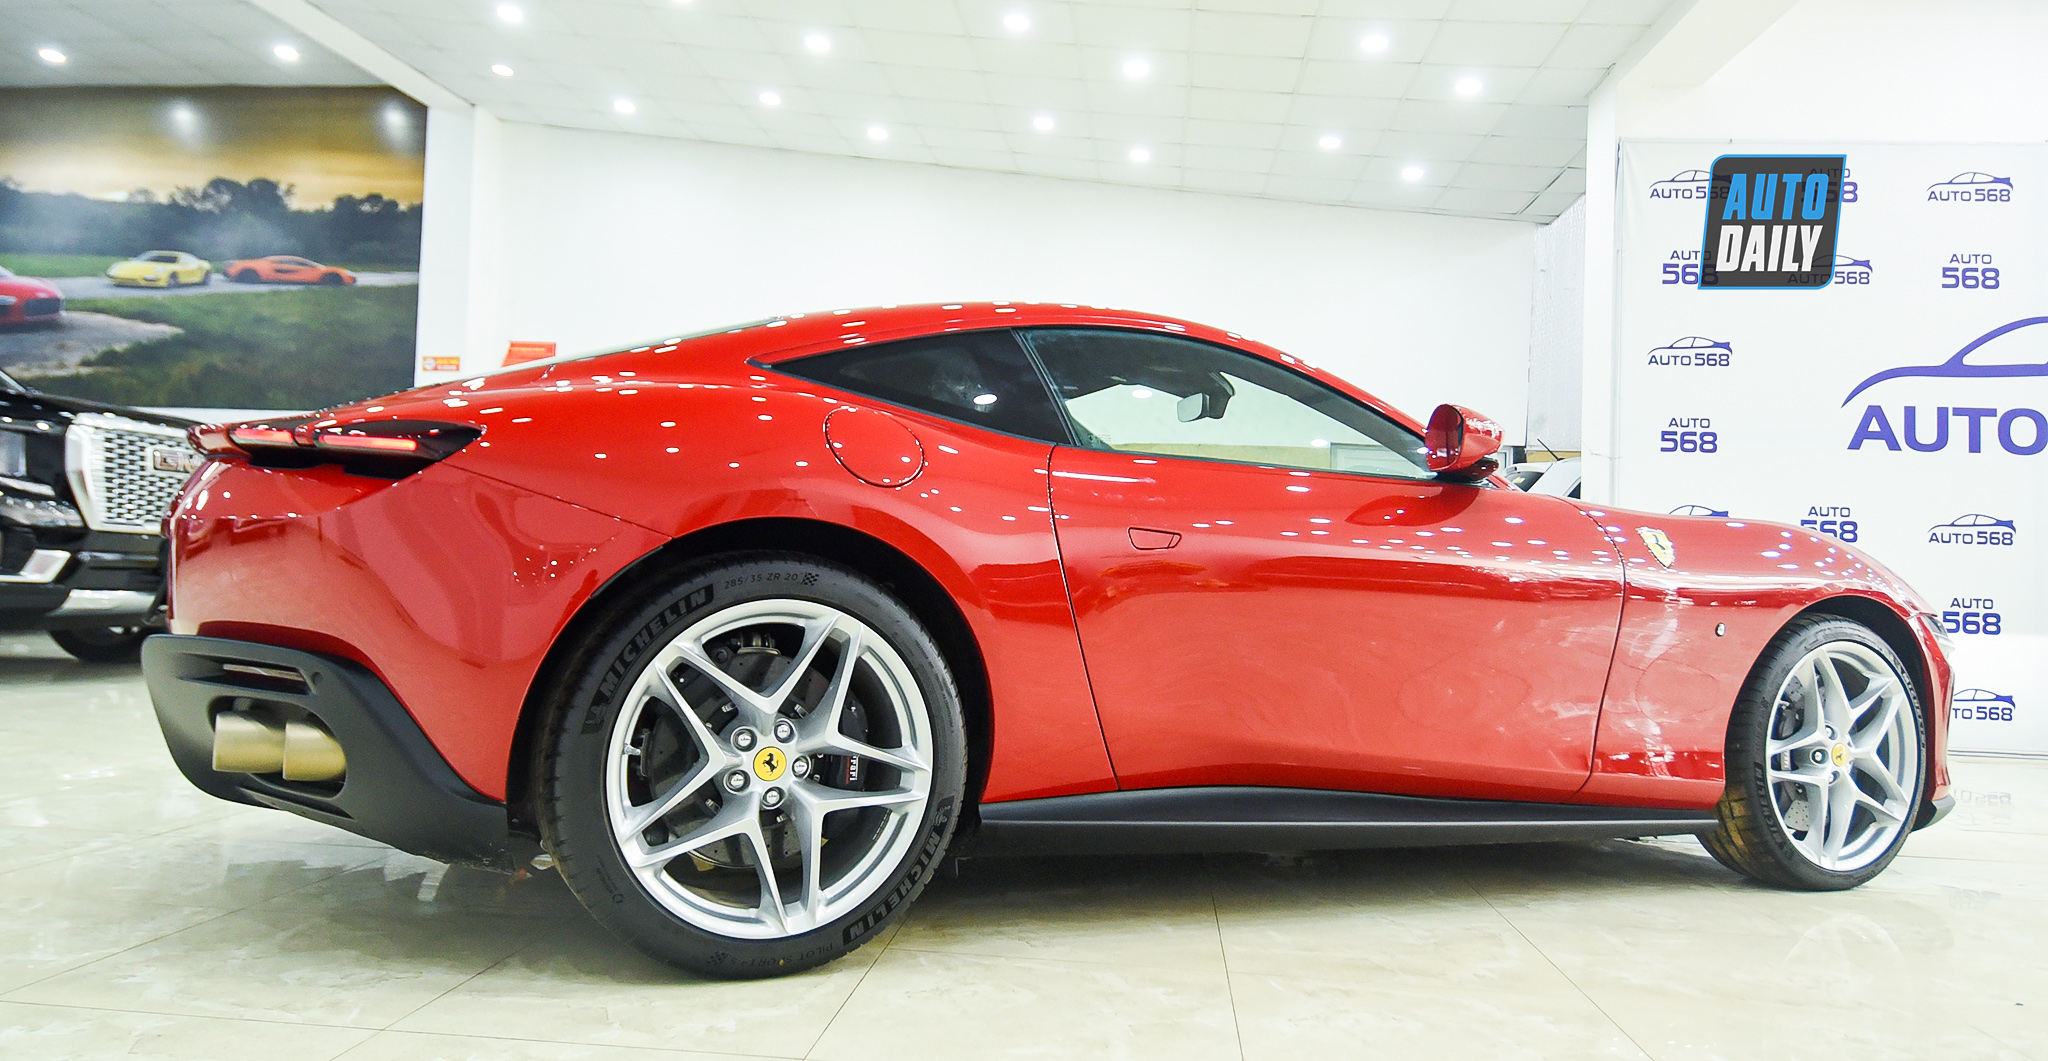 Chi tiết Ferrari Roma thứ 2 về Việt Nam, giá hơn 20 tỷ đồng ferrari-roma-autodaily-26.jpg